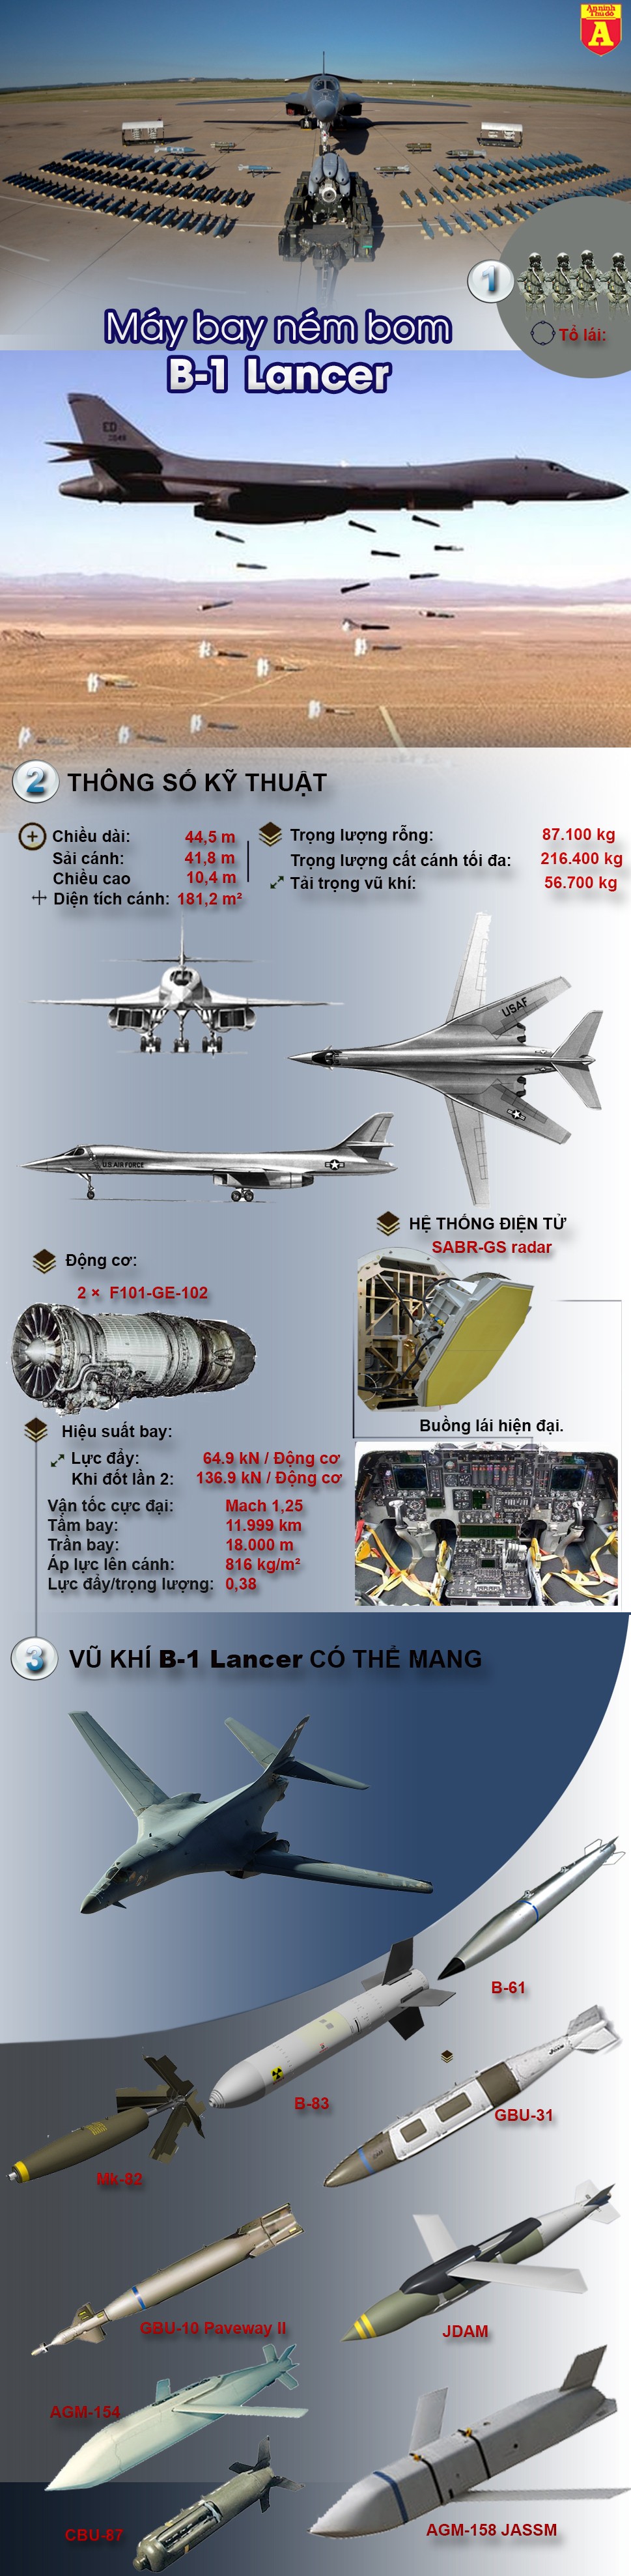 [Infographic] Tìm hiểu siêu máy bay ném bom Tổng thống Trump điều tới bán đảo Triều Tiên ảnh 2